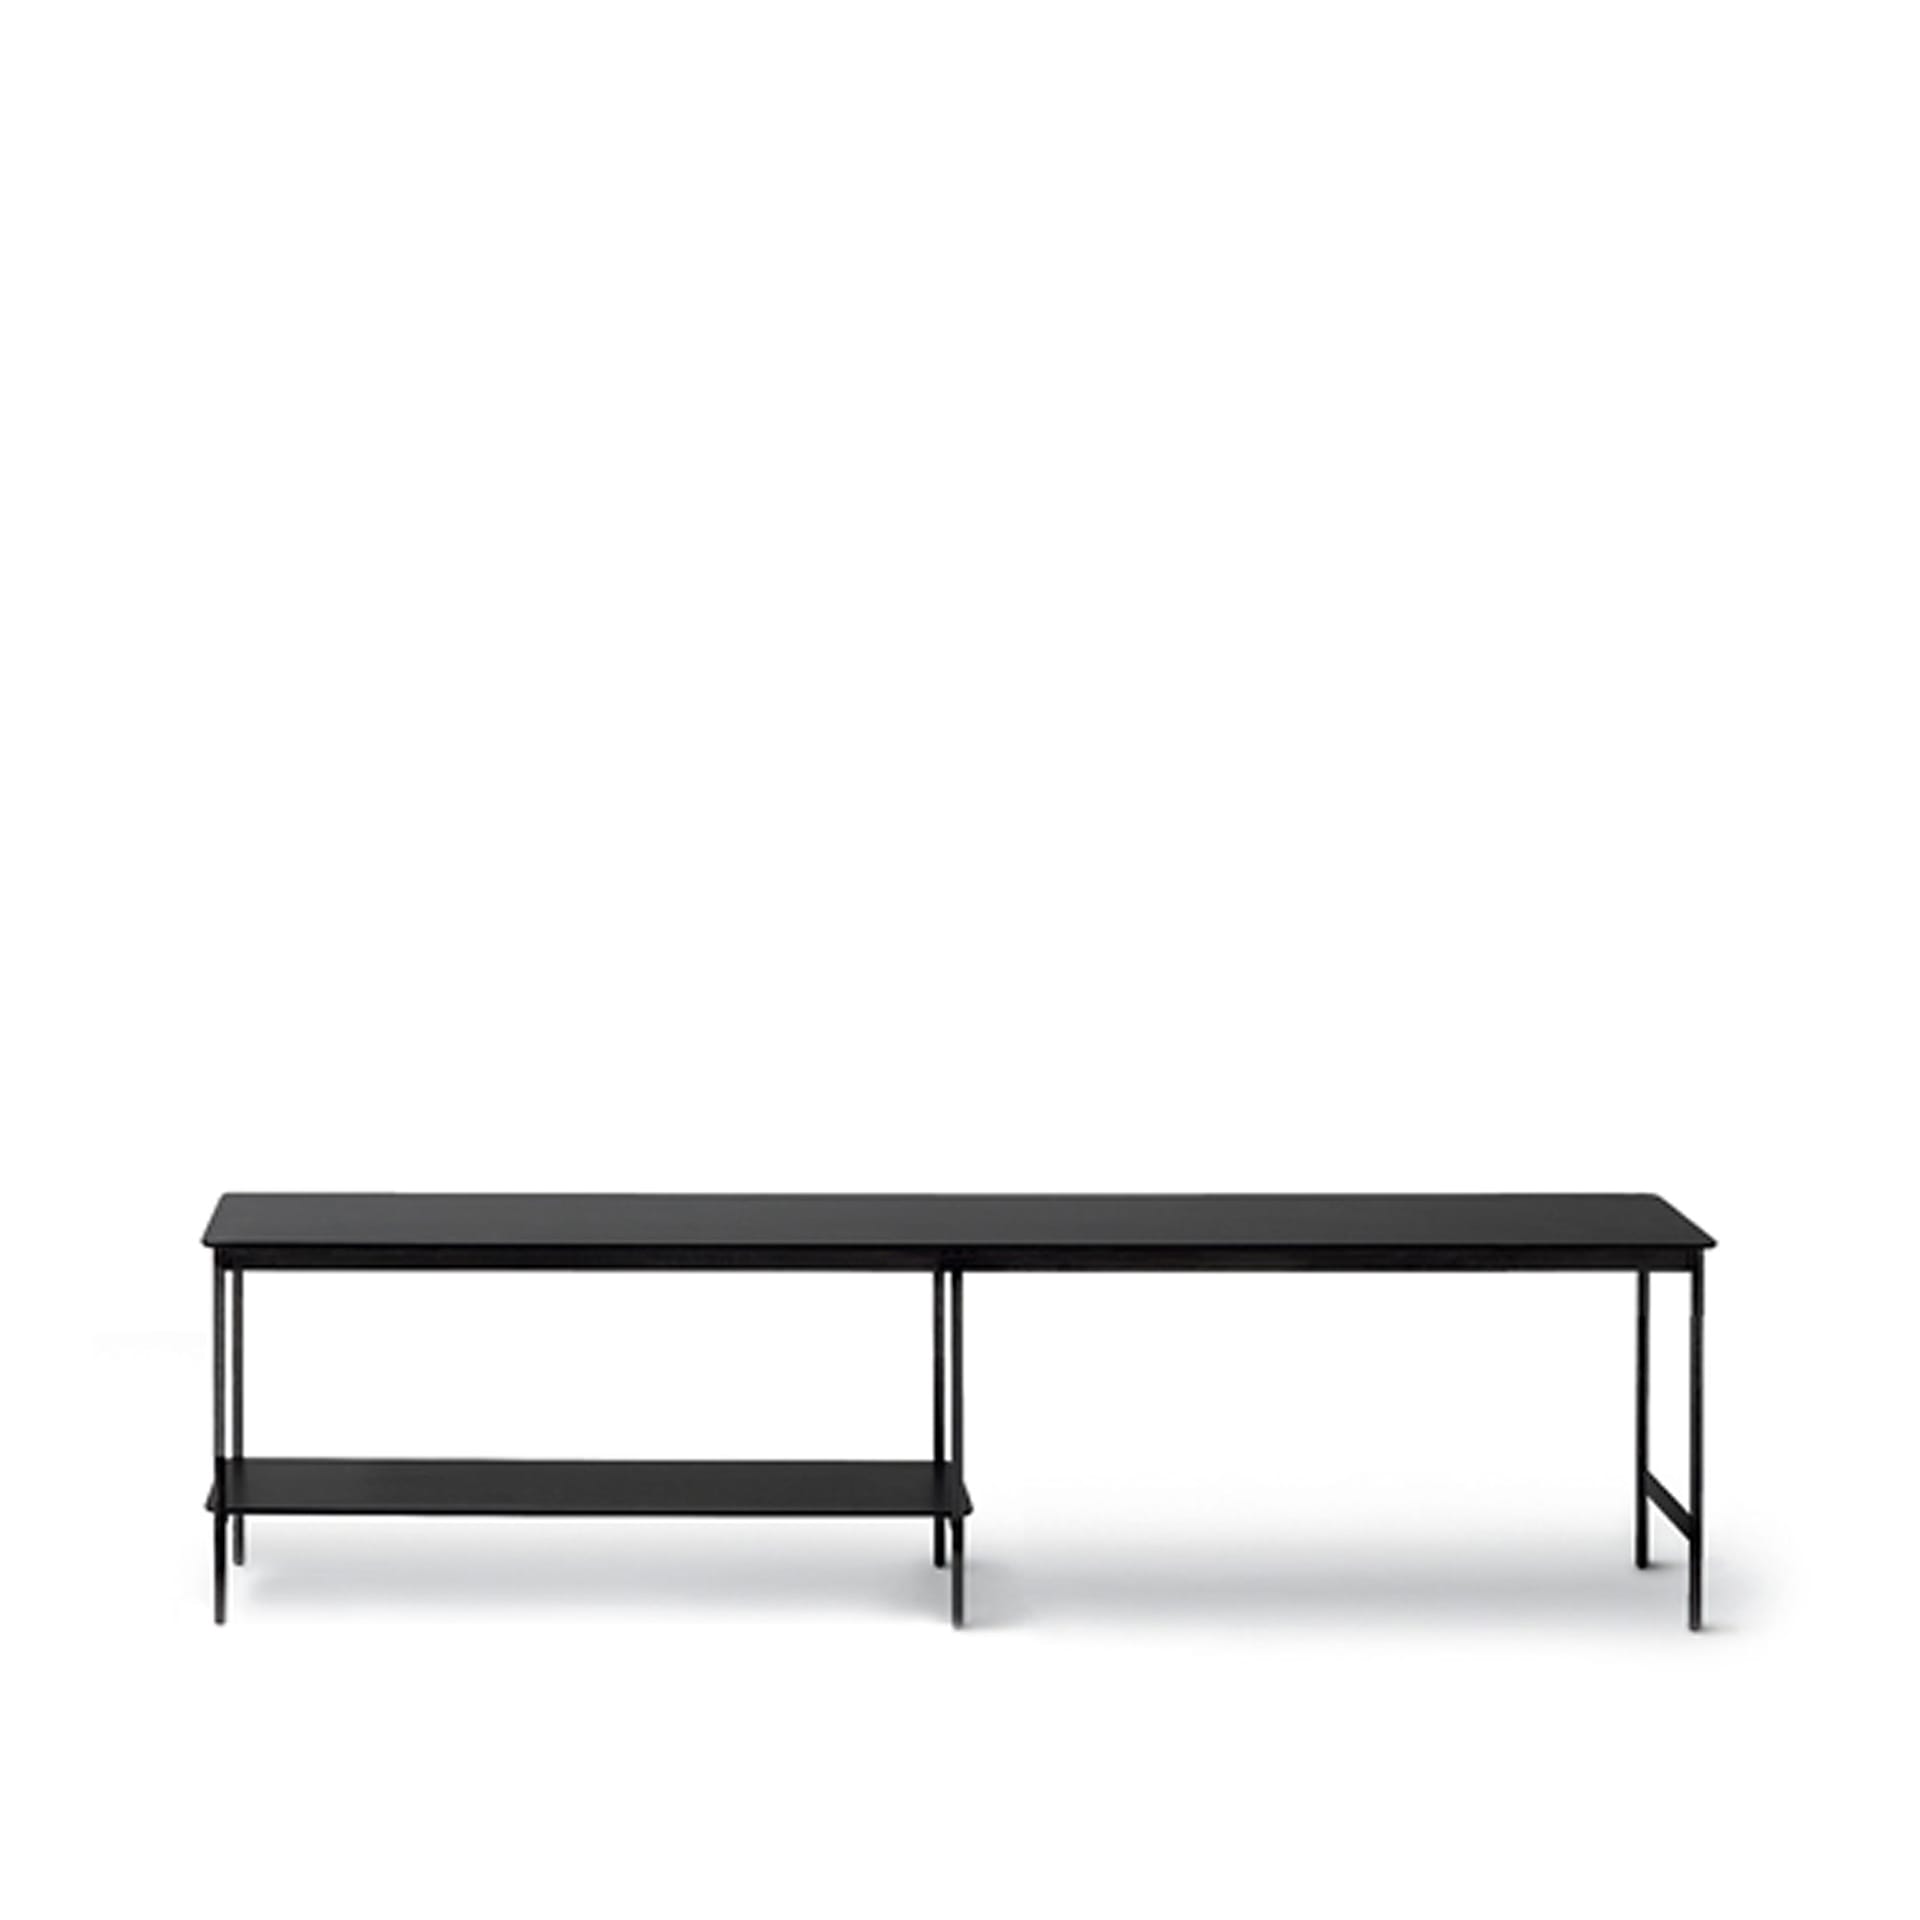 Capilano Small Table 187 x 30 cm - Fondovalle Lava - Arflex - NO GA